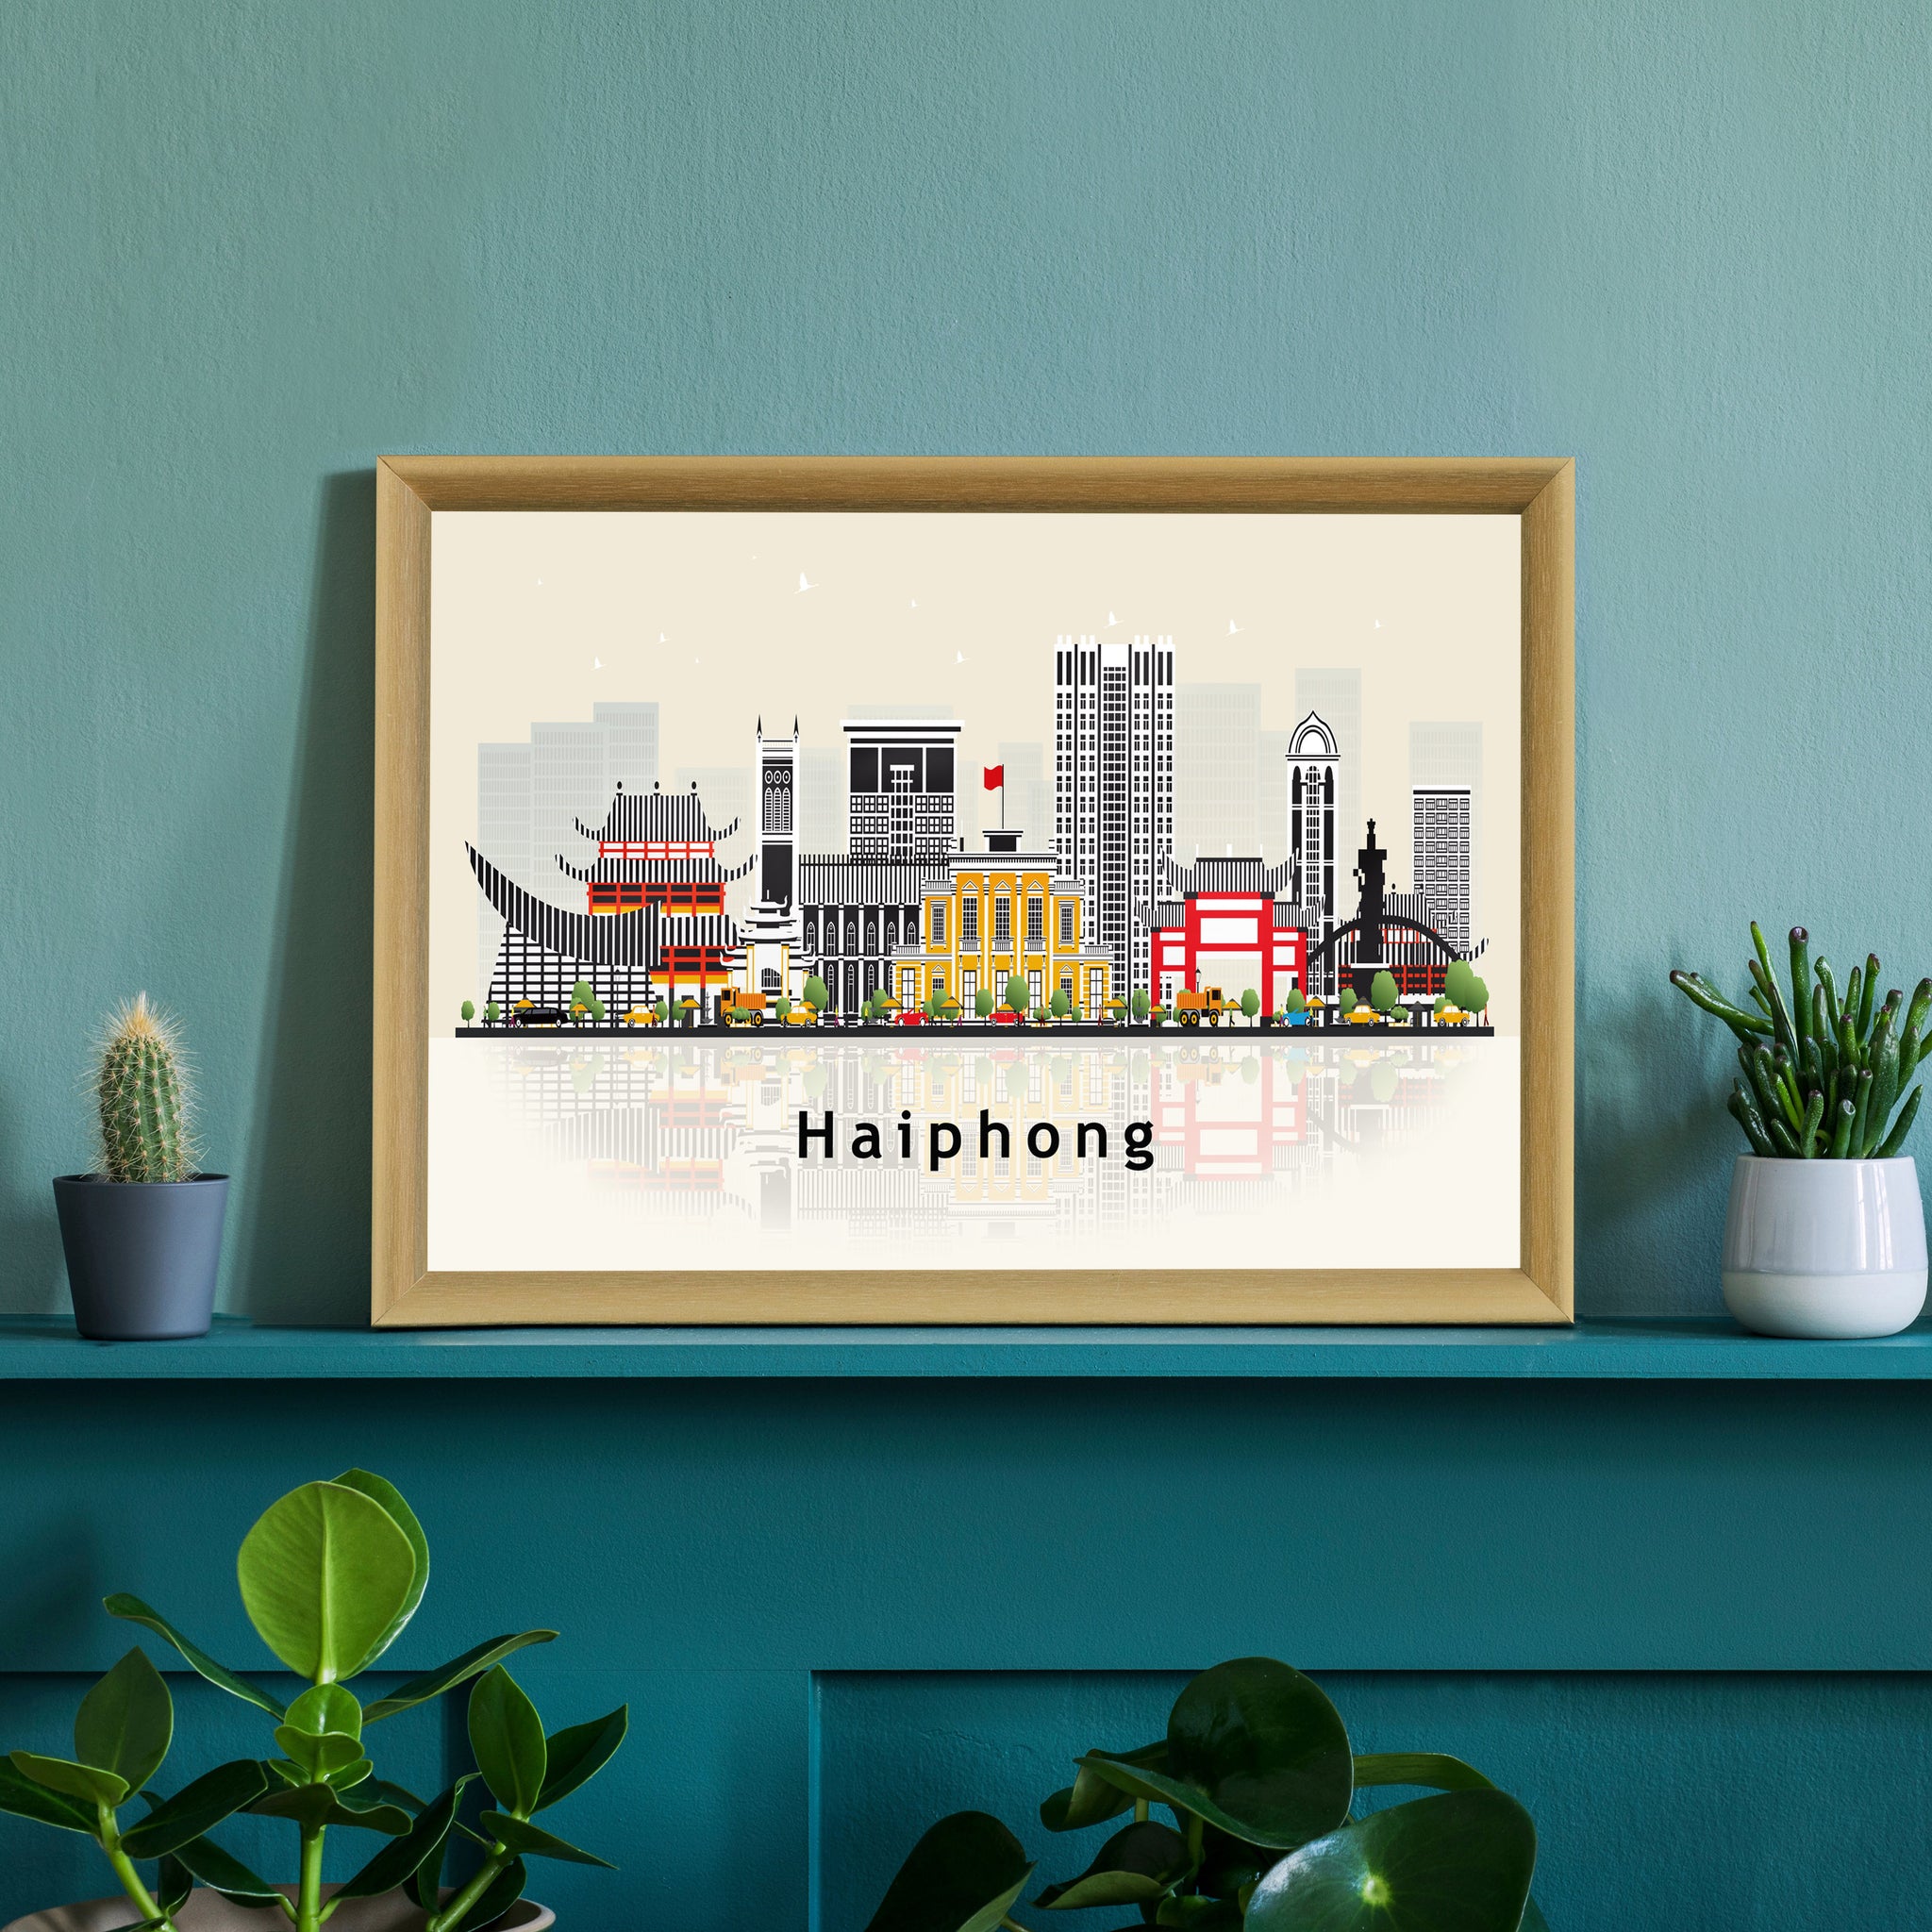 HAIPHONG VIETNAM Illustration skyline poster, Modern skyline cityscape poster, Haiphong city skyline landmark map poster, Home wall art